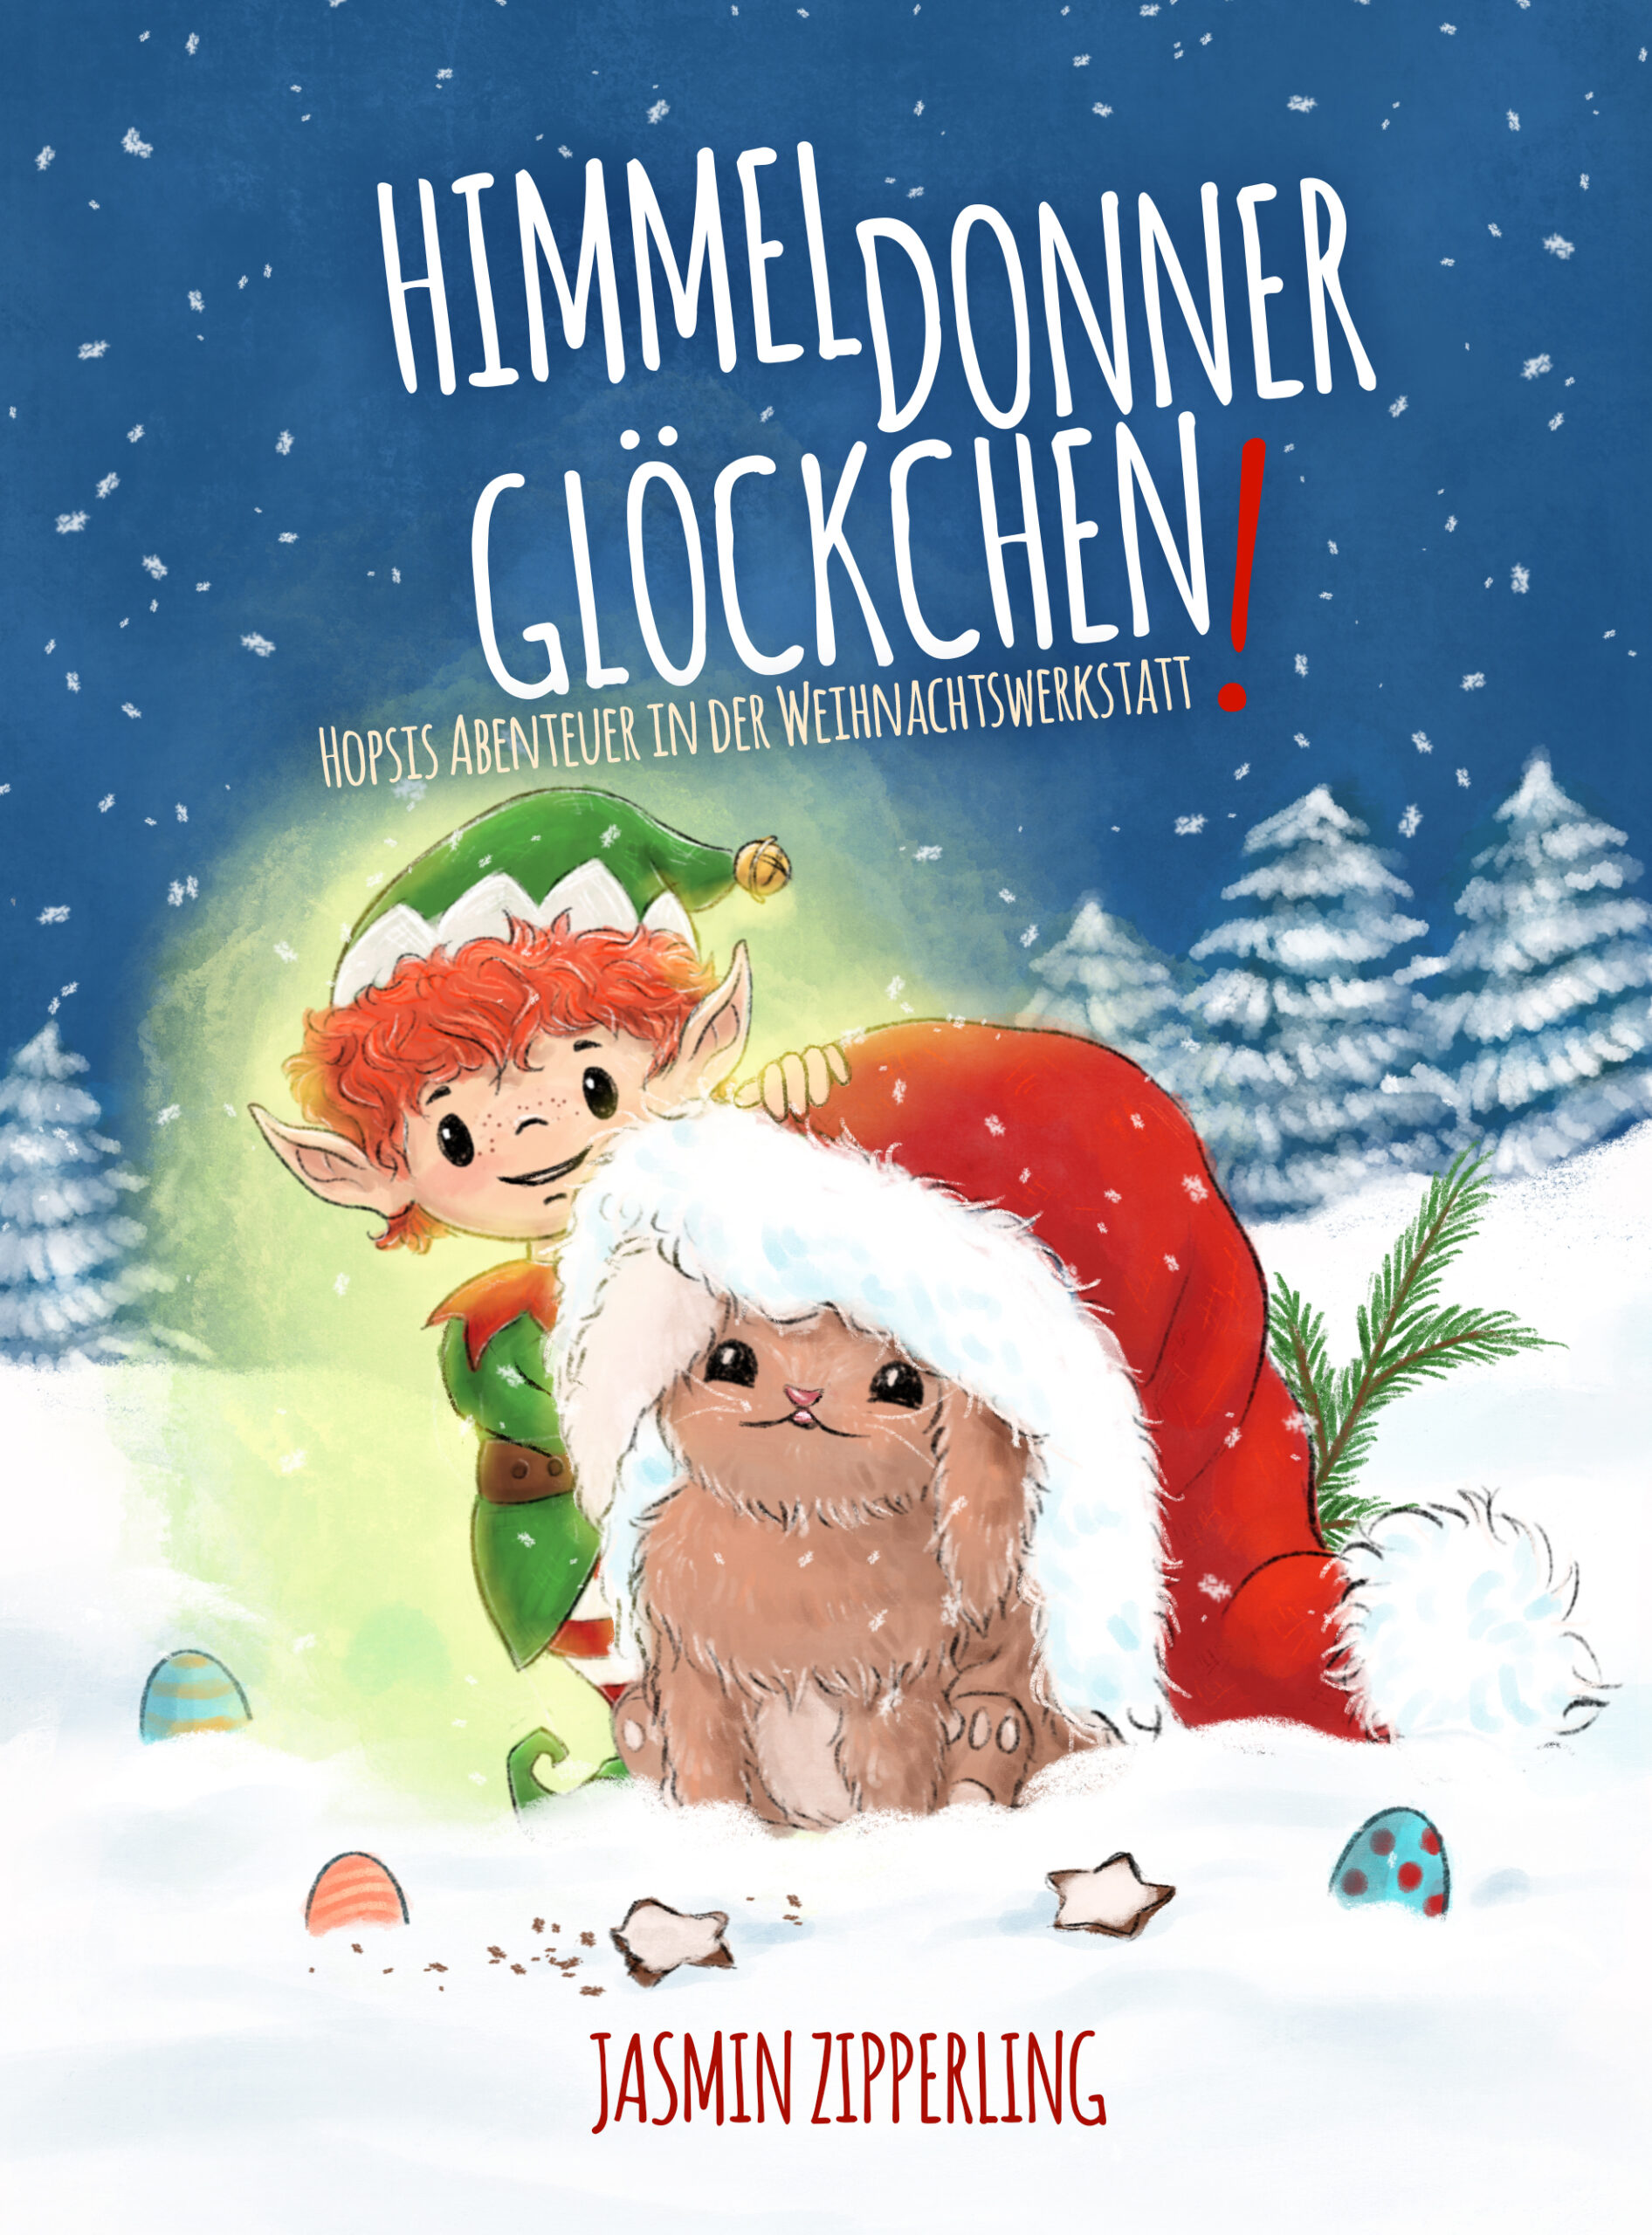 Himmeldonnerglöckchen Hopsis Abenteuer in der Weihnachtswerkstatt von Jasmin Zipperling